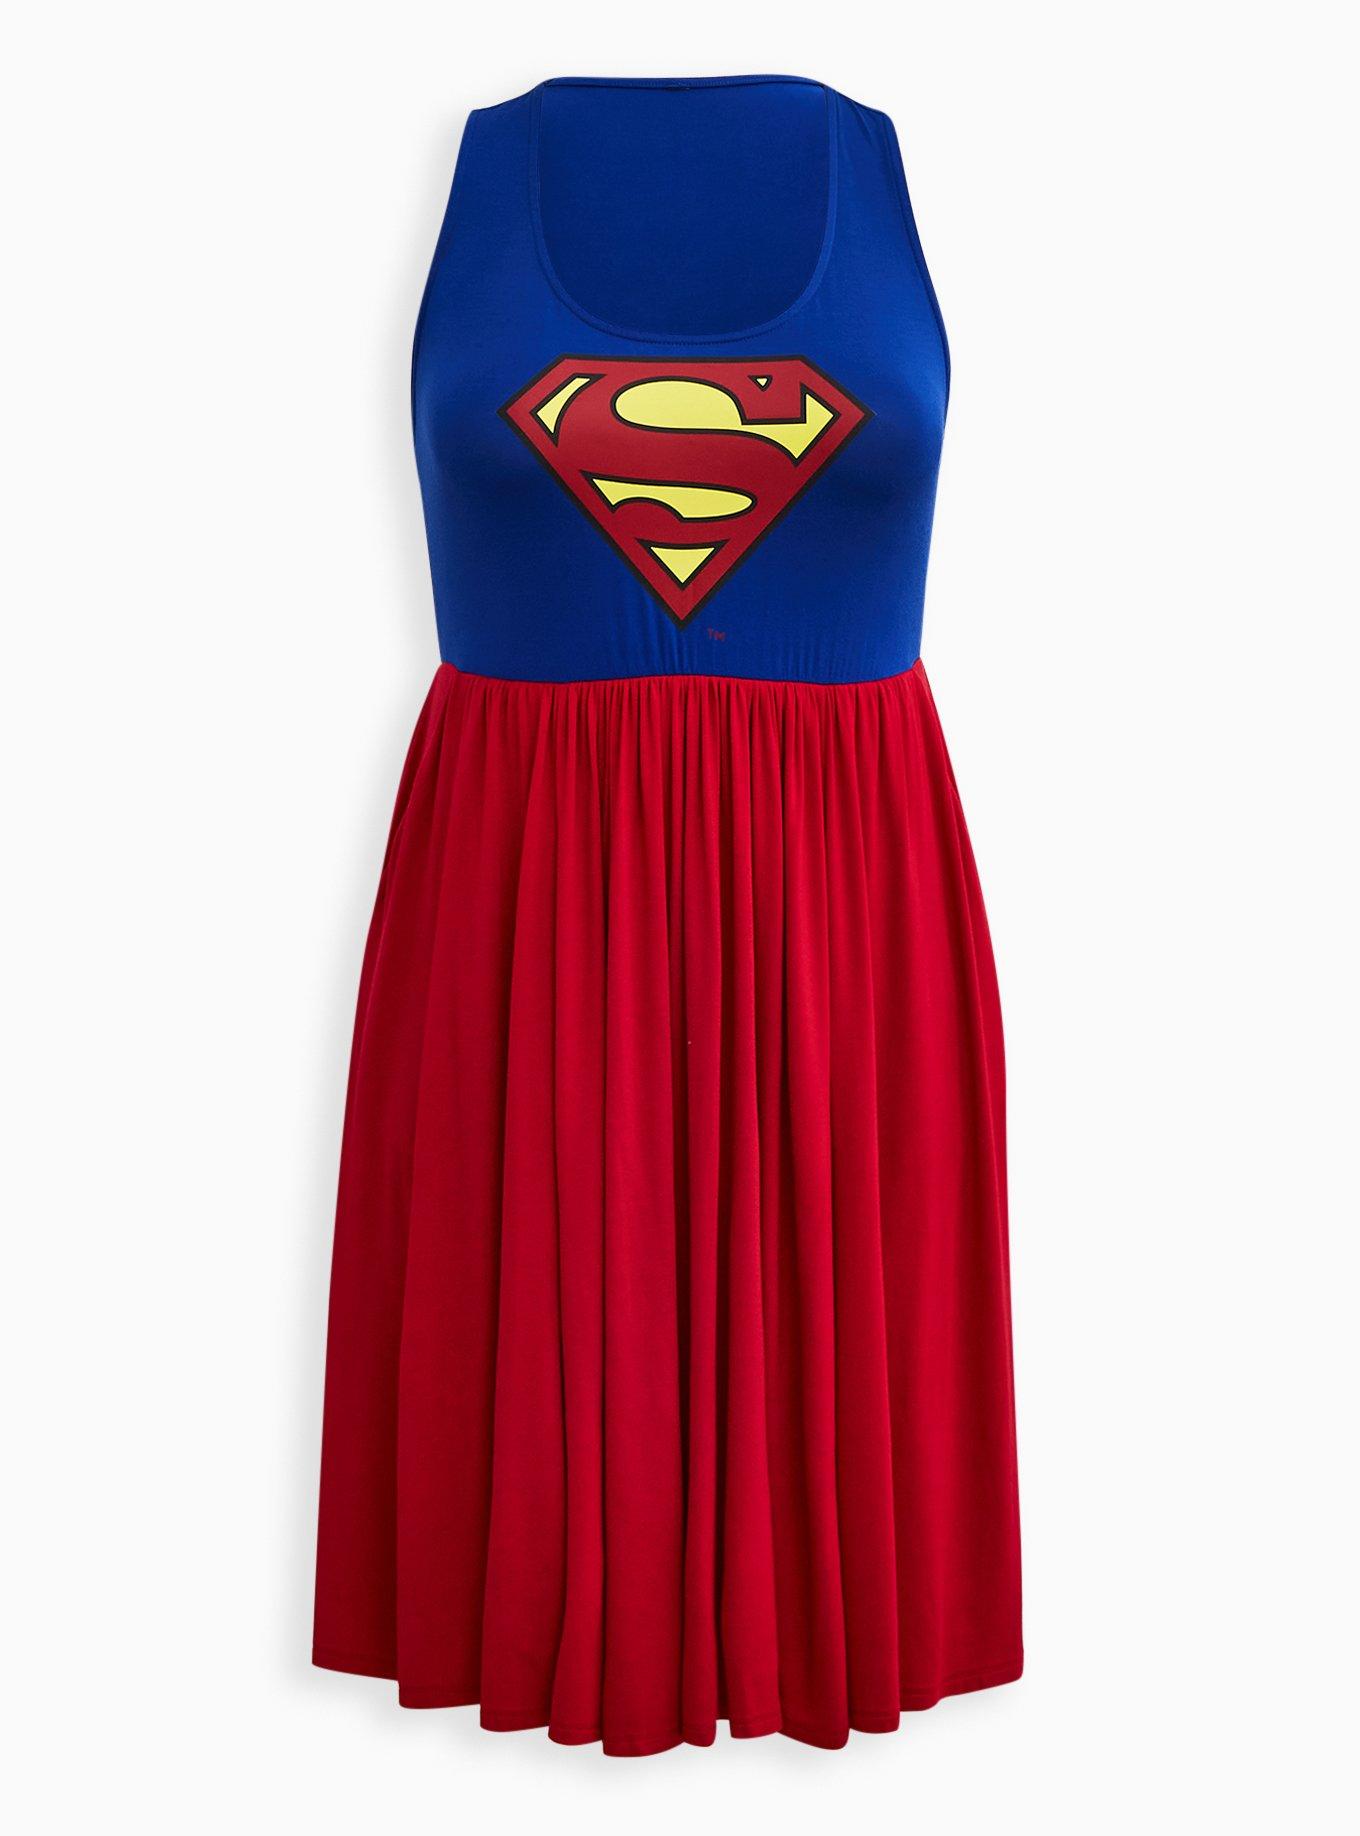 Plus Size - DC Superman Skater Dress - Super Soft Red & Blue - Torrid